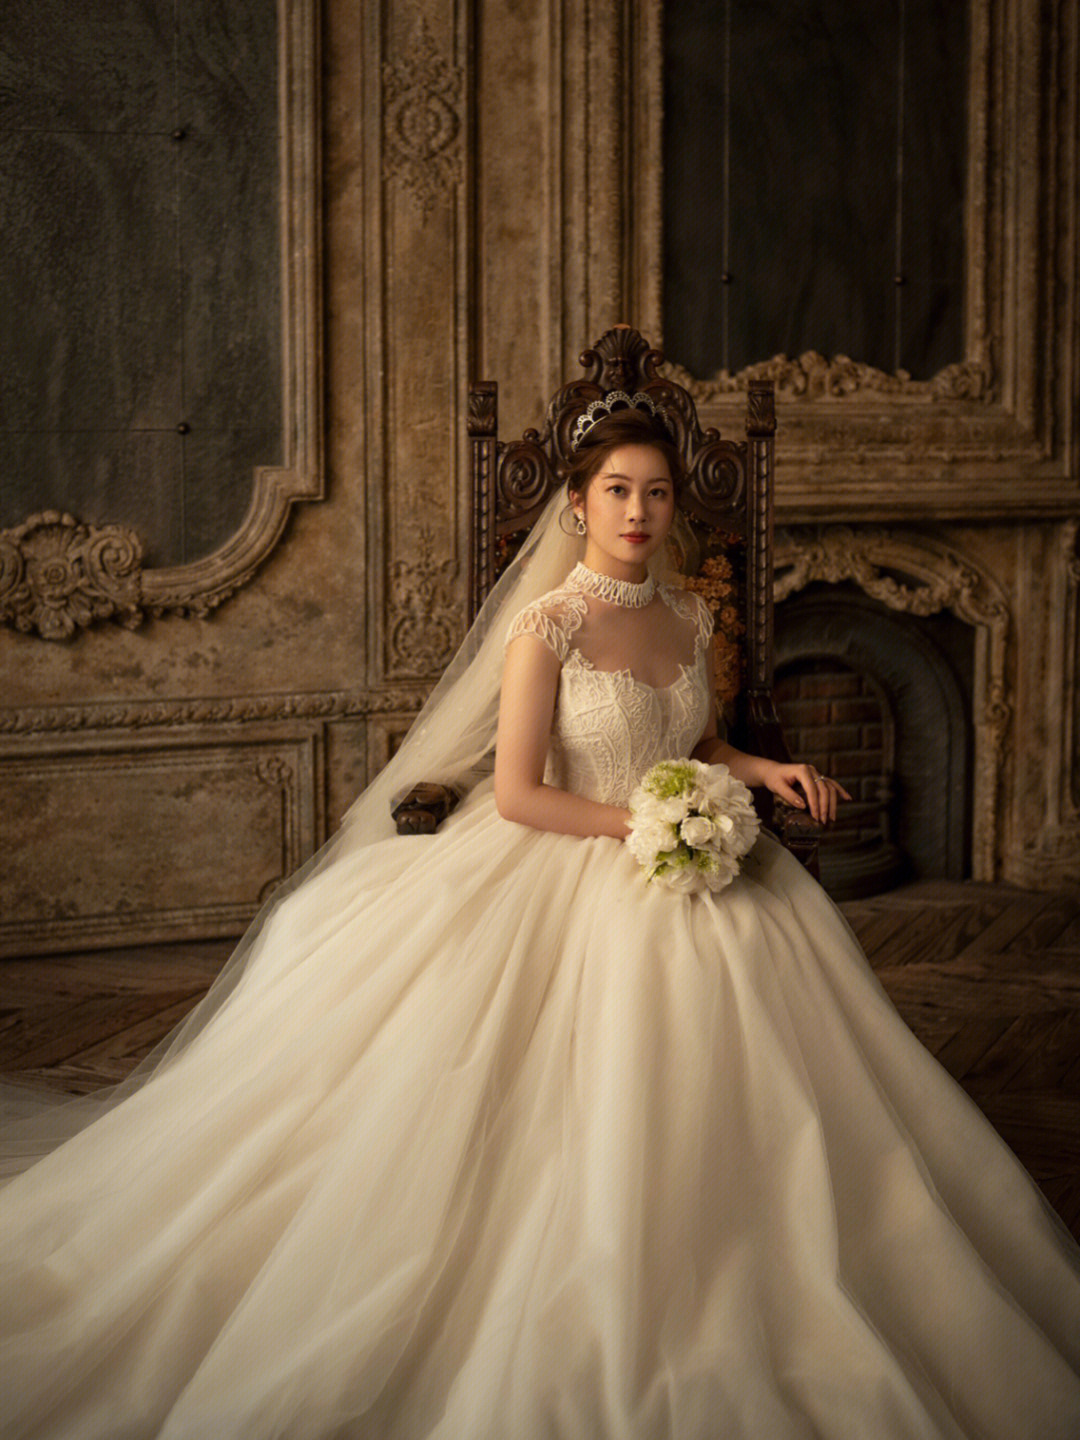 艾尔文婚纱照分享30招牌内景欧式古堡